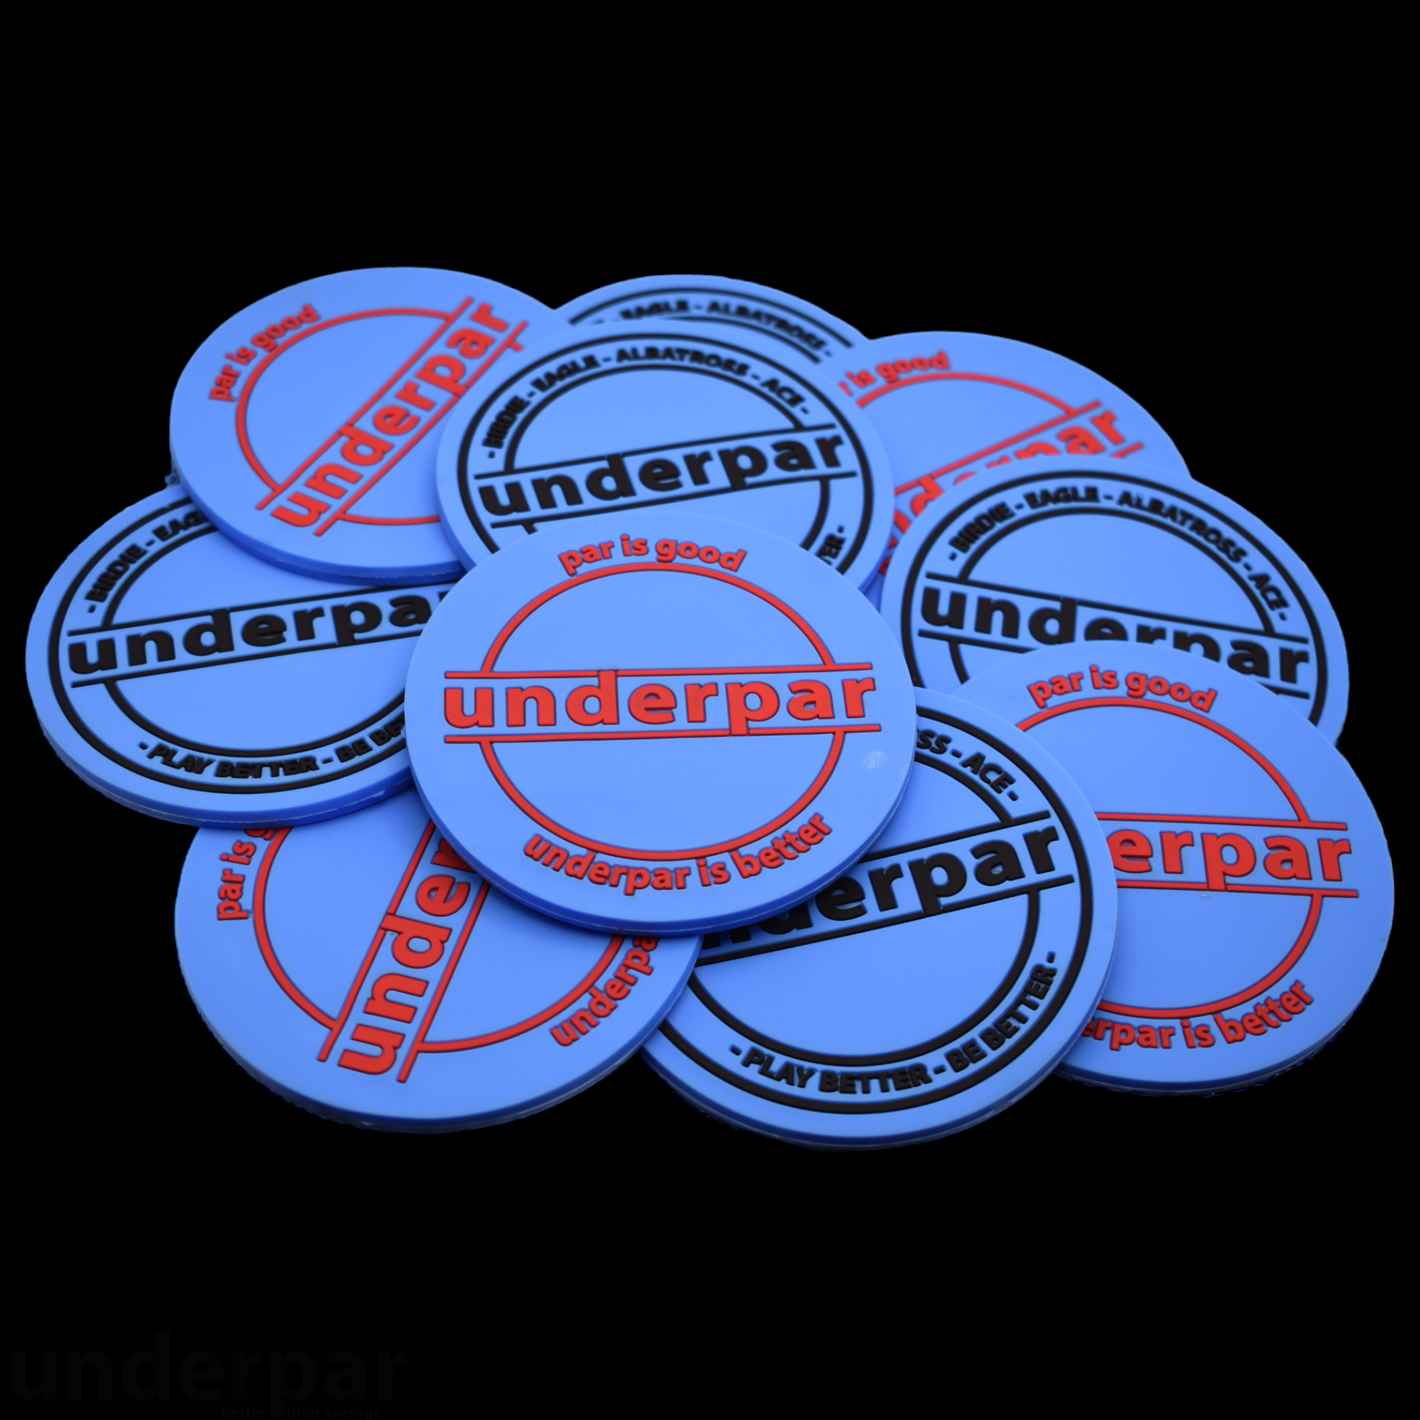 UnderPar Collection: UnderPar PVC Rubber Coaster / Mini Marker